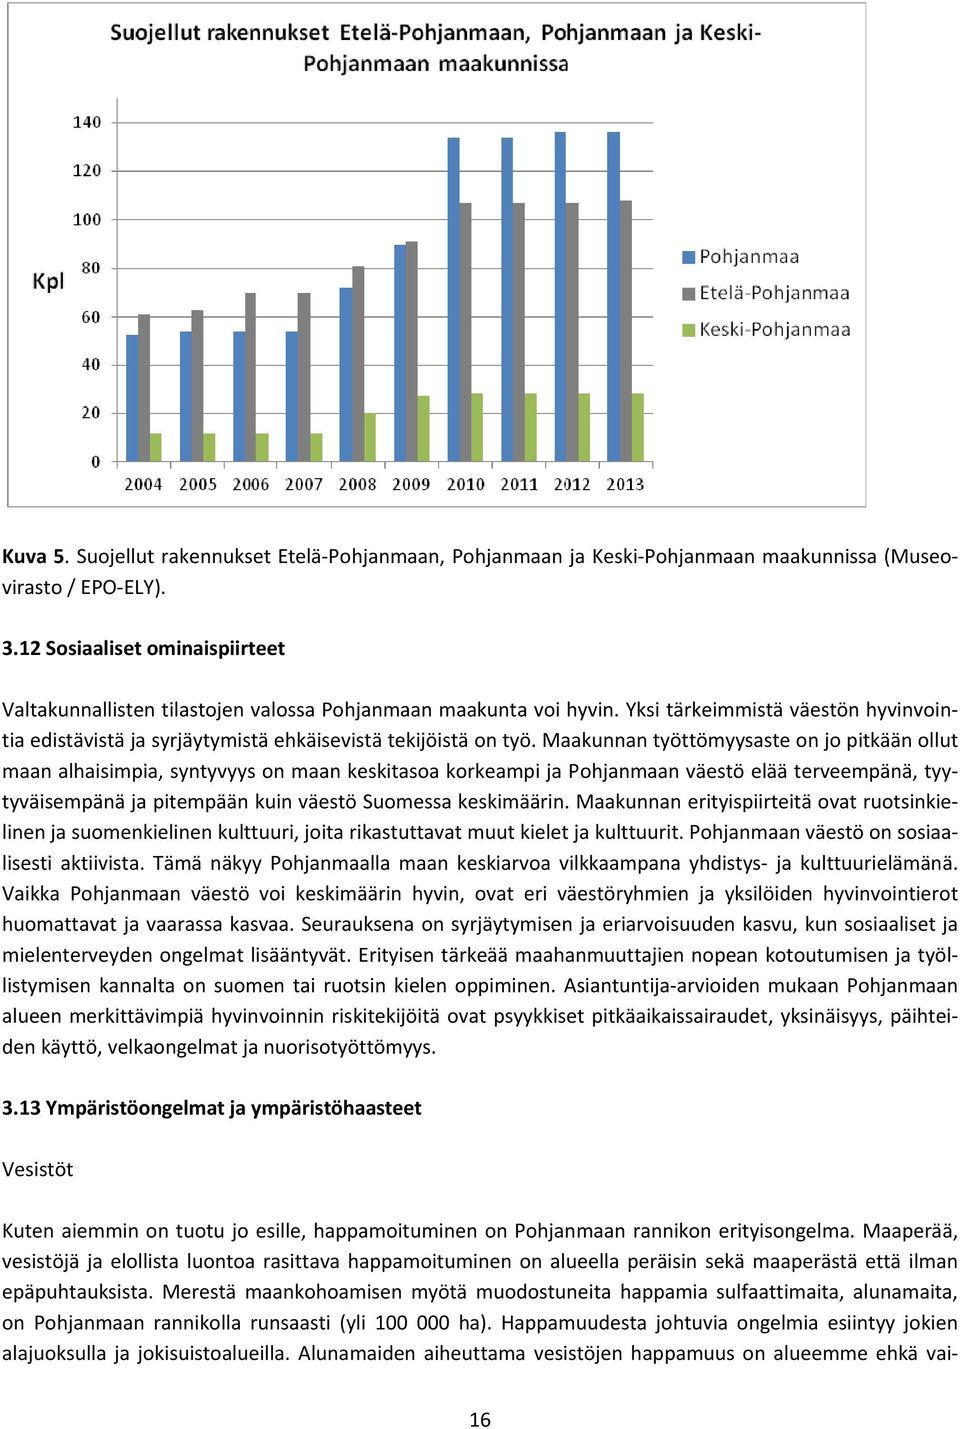 Maakunnan työttömyysaste on jo pitkään ollut maan alhaisimpia, syntyvyys on maan keskitasoa korkeampi ja Pohjanmaan väestö elää terveempänä, tyytyväisempänä ja pitempään kuin väestö Suomessa